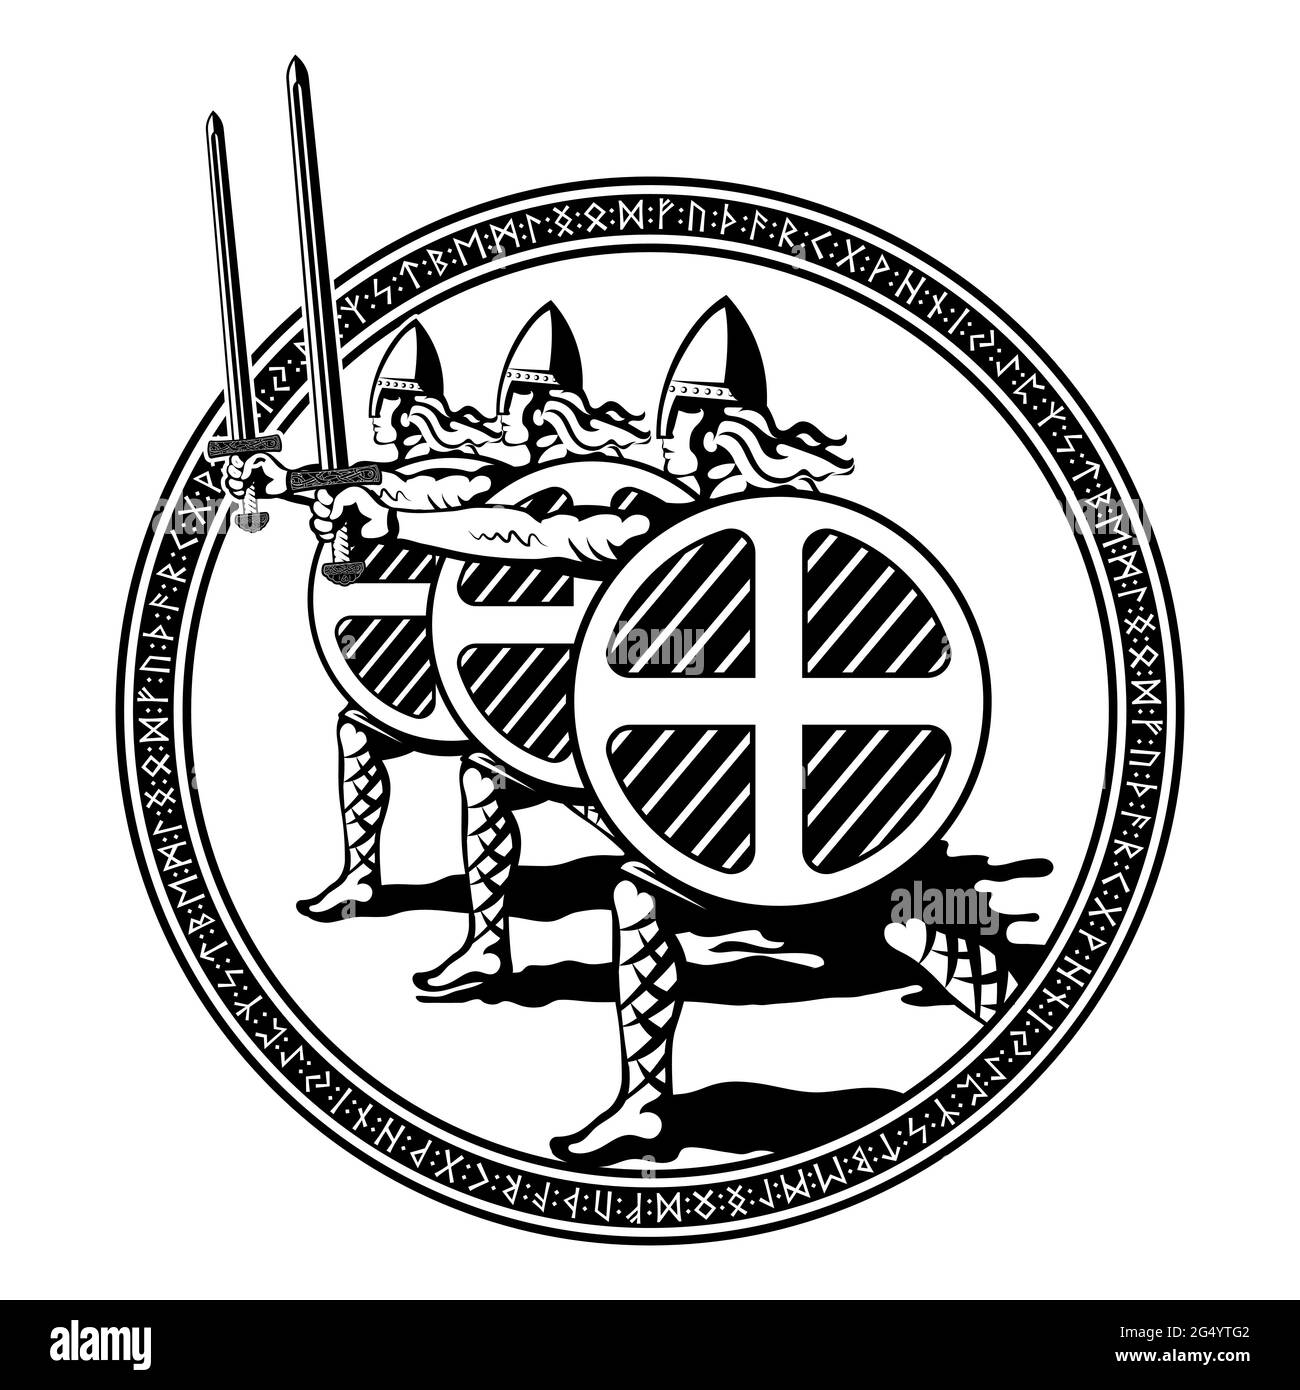 Viking, skandinavisches Design. Nördliche Krieger Berserker mit Schwertern und Schilden Stock Vektor